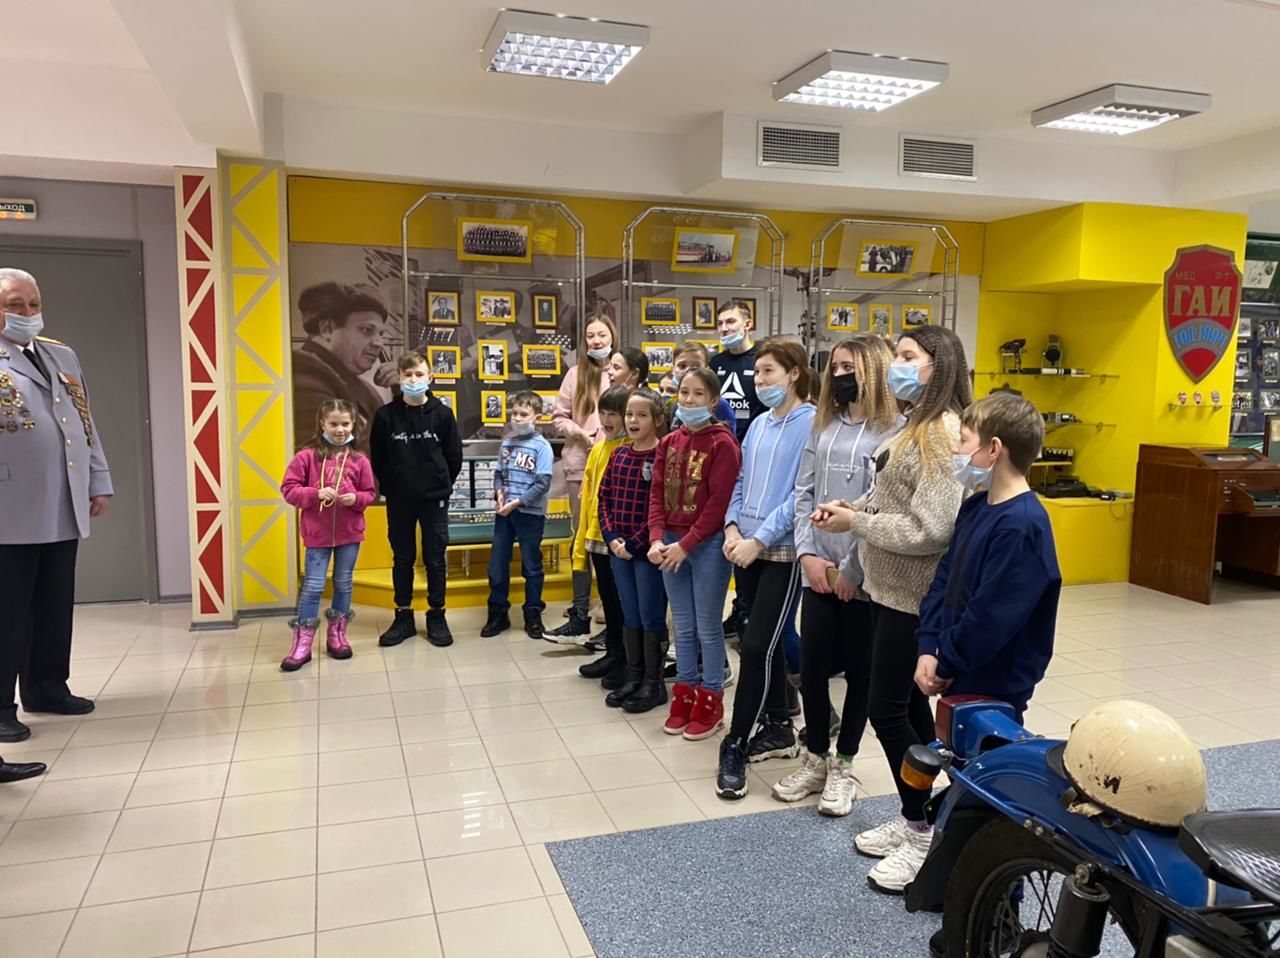 Воспитанники Чистопольского детского дома посетили Управление ГИБДД МВД по Республике Татарстан